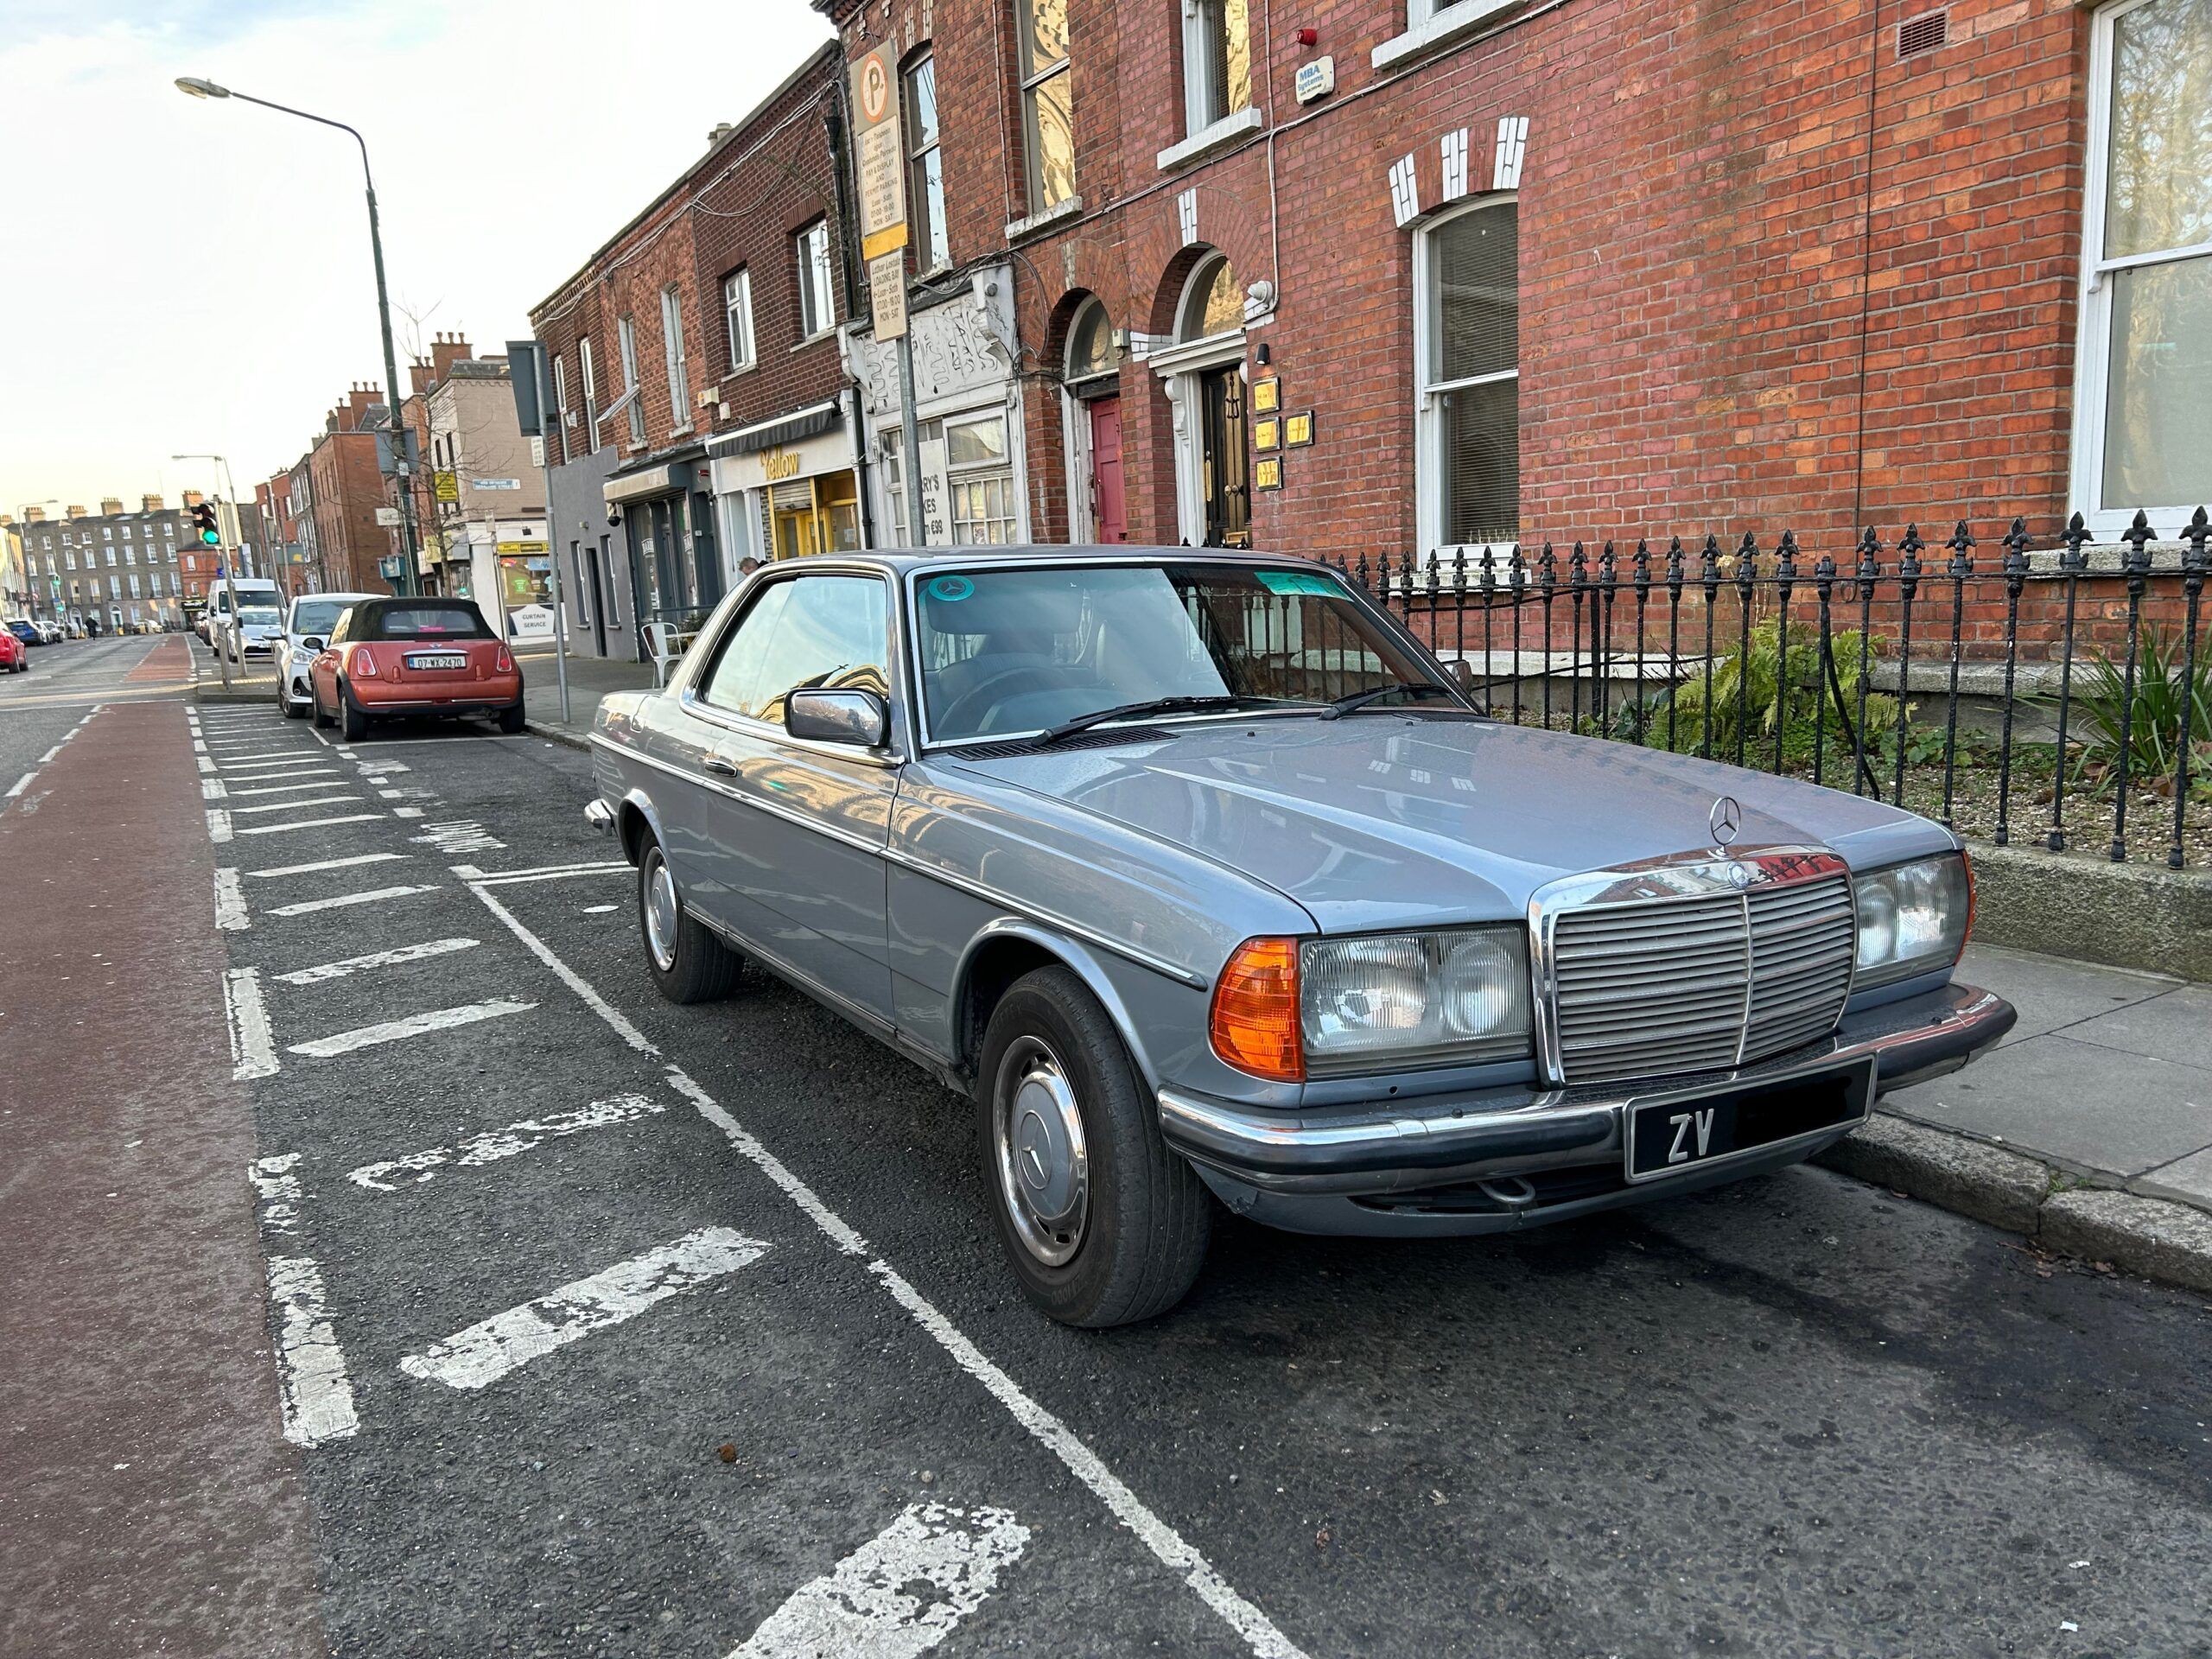 Acropolis Rally Giant 1980s Mercedes 280CE seen parading in Dublin | Season 4 – Episode 3